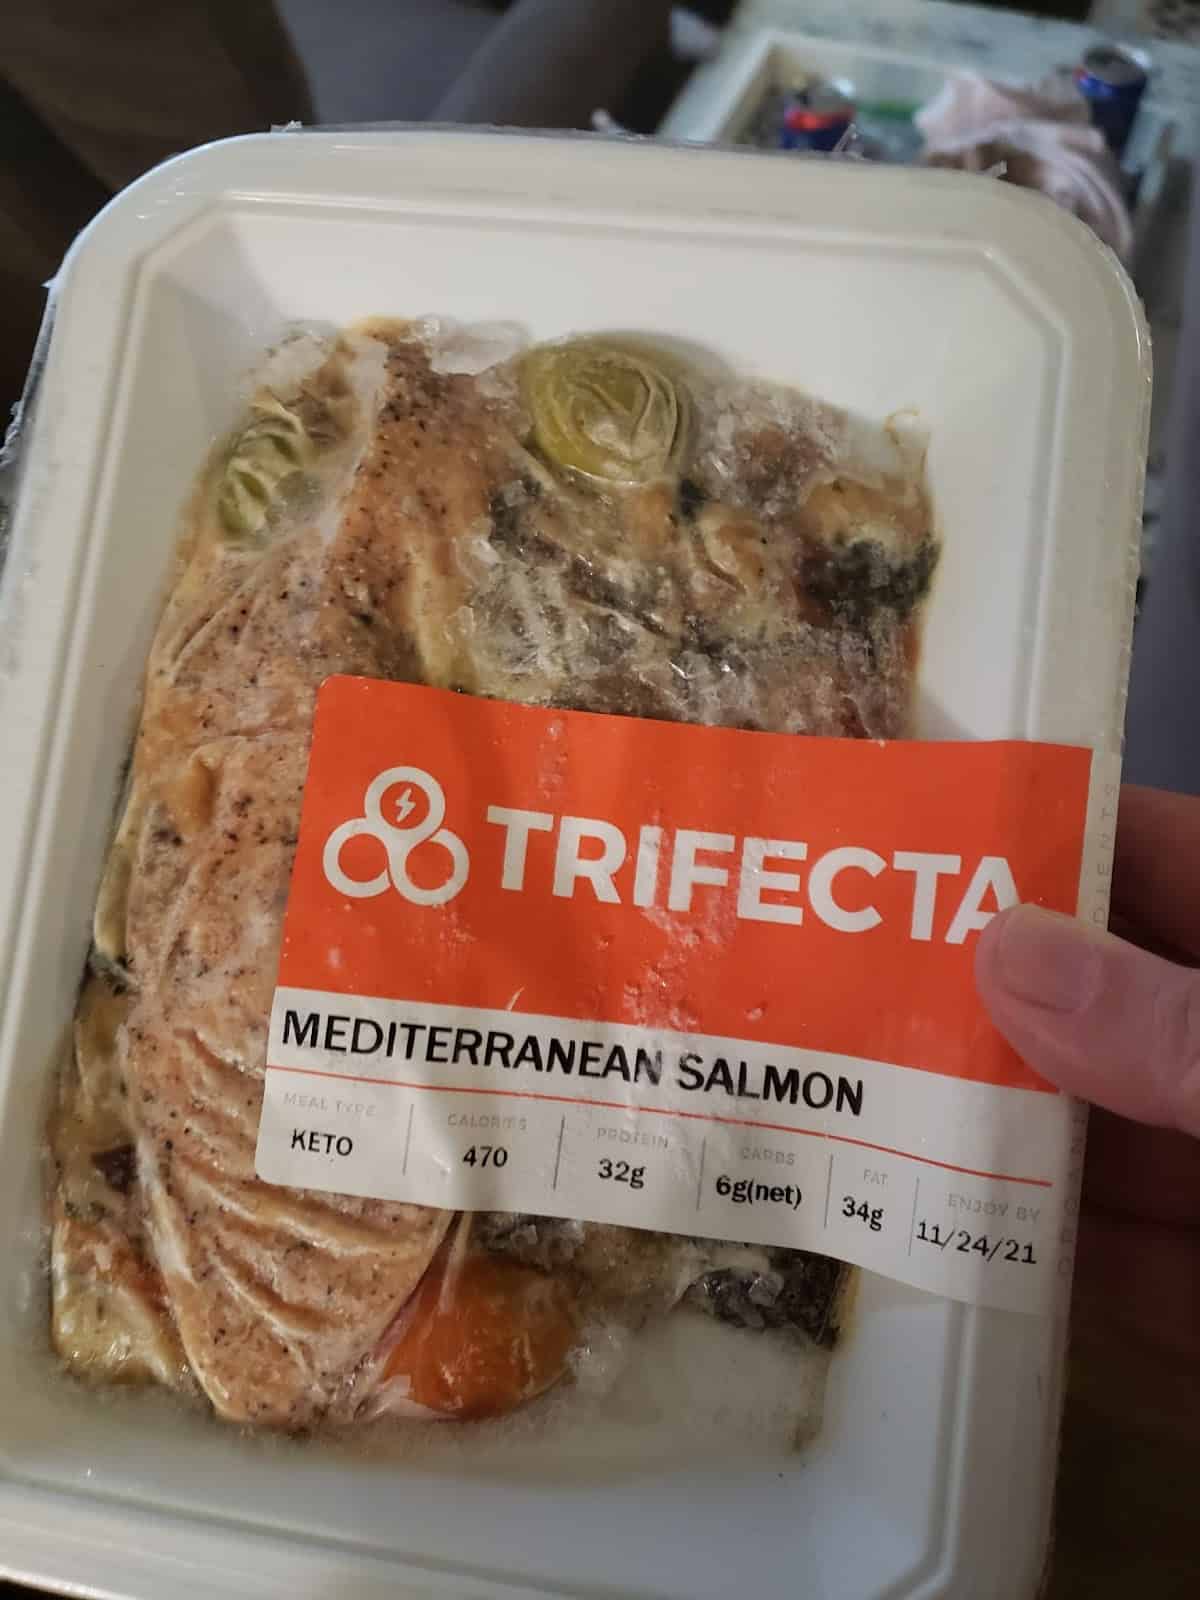 Meal package of Mediterranean Salmon